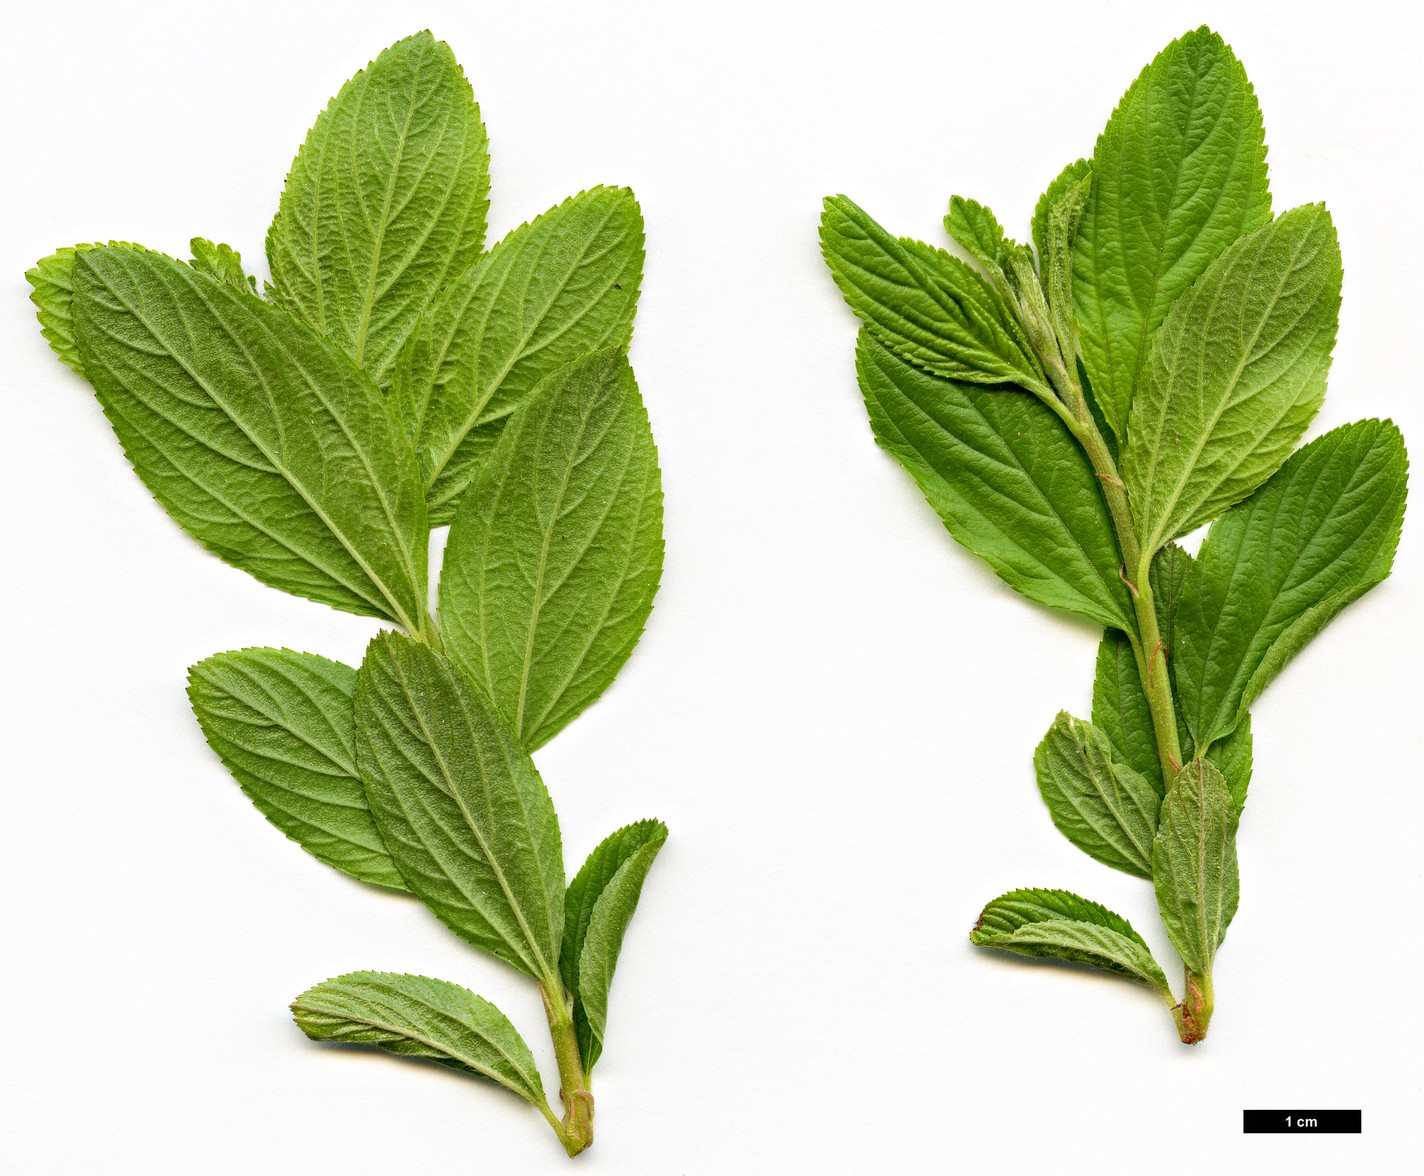 High resolution image: Family: Rhamnaceae - Genus: Ceanothus - Taxon: herbaceus